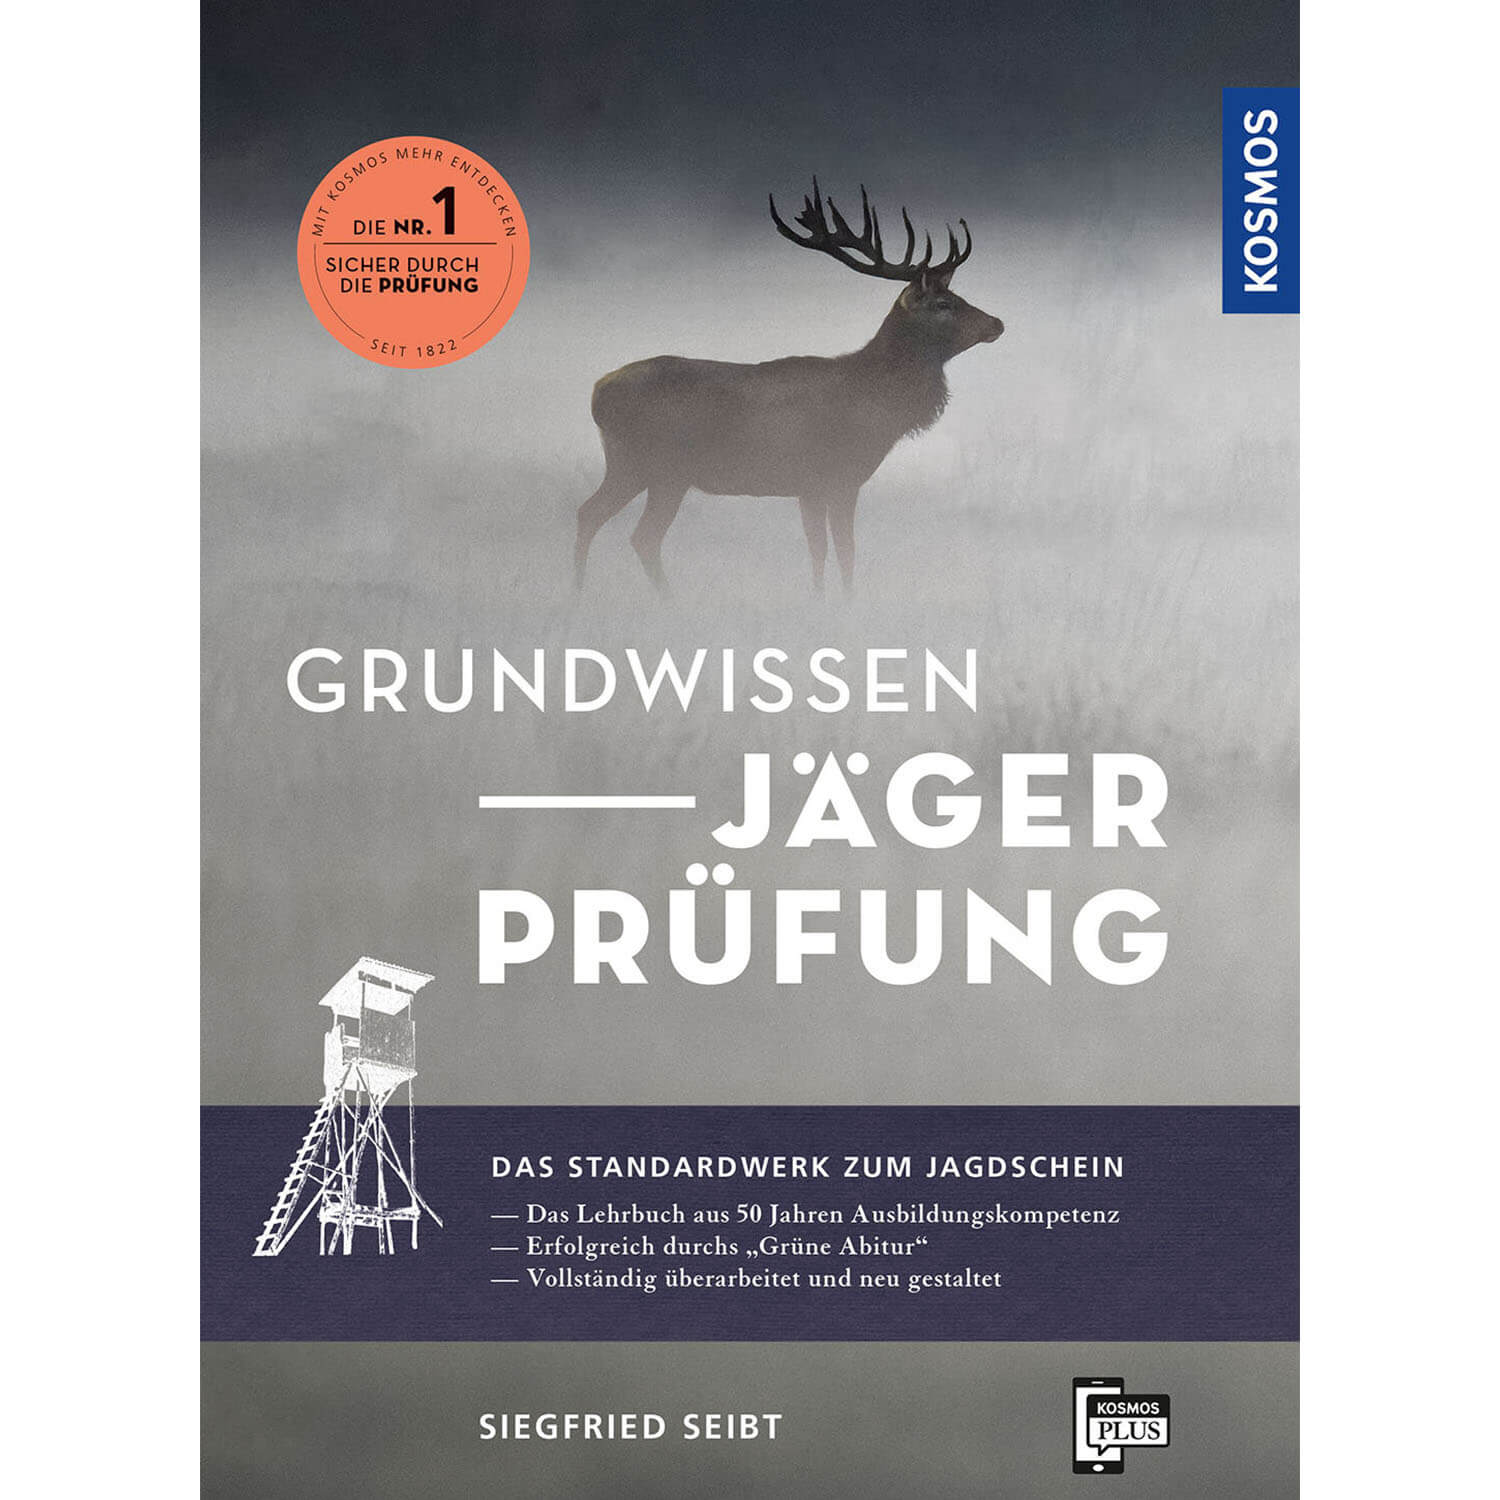 Grundwissen Jägerprüfung - Buch - Siegfried Seibt - Jagdbücher